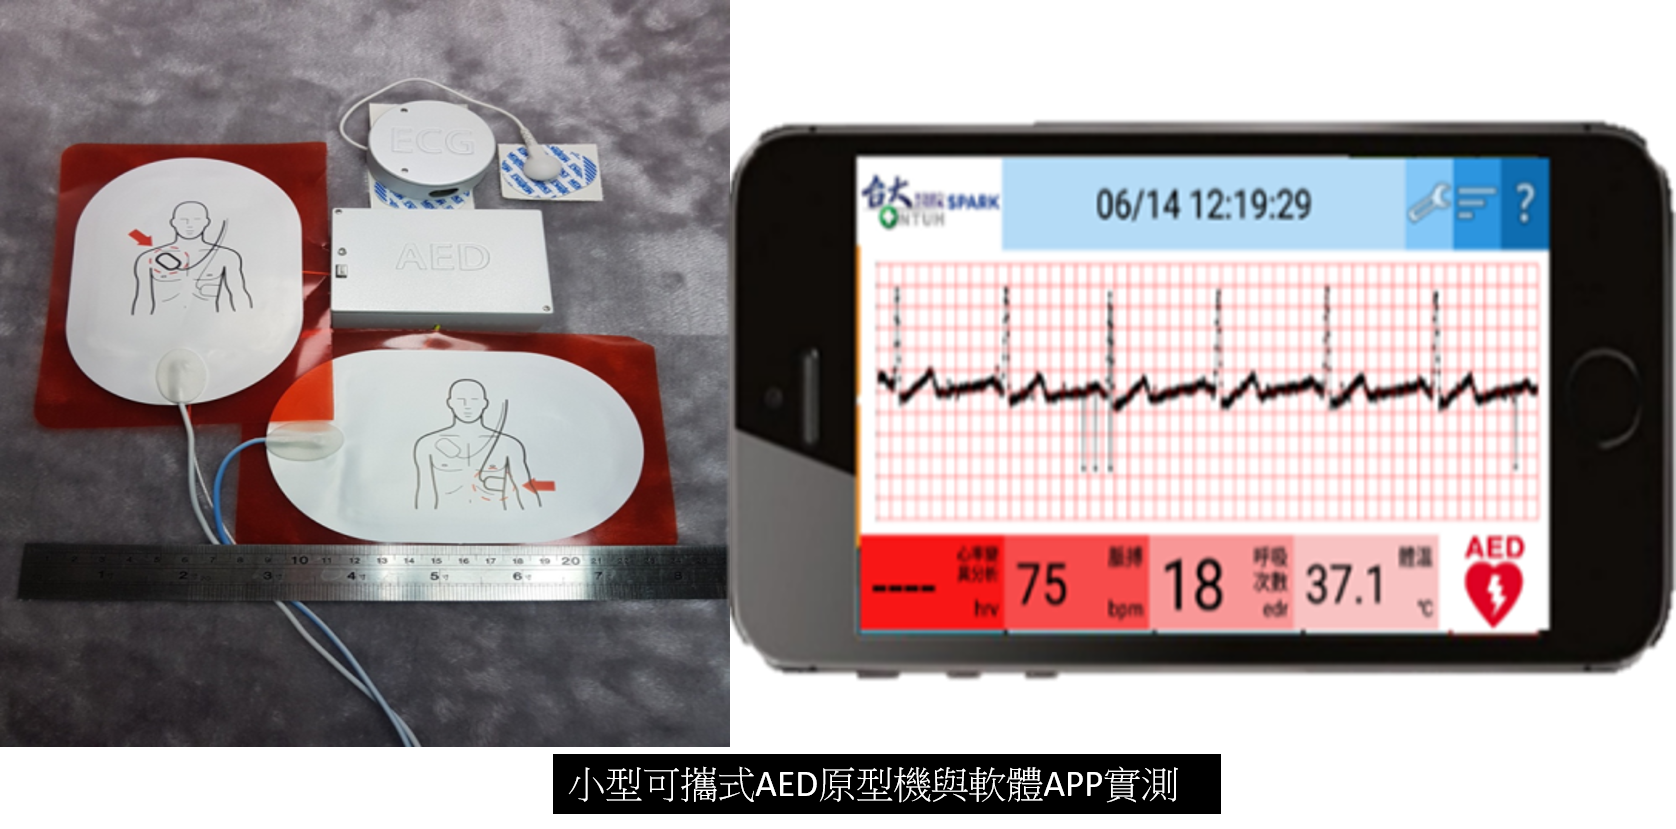 小型可攜式AED緊急救護與CPR輔助裝置系統